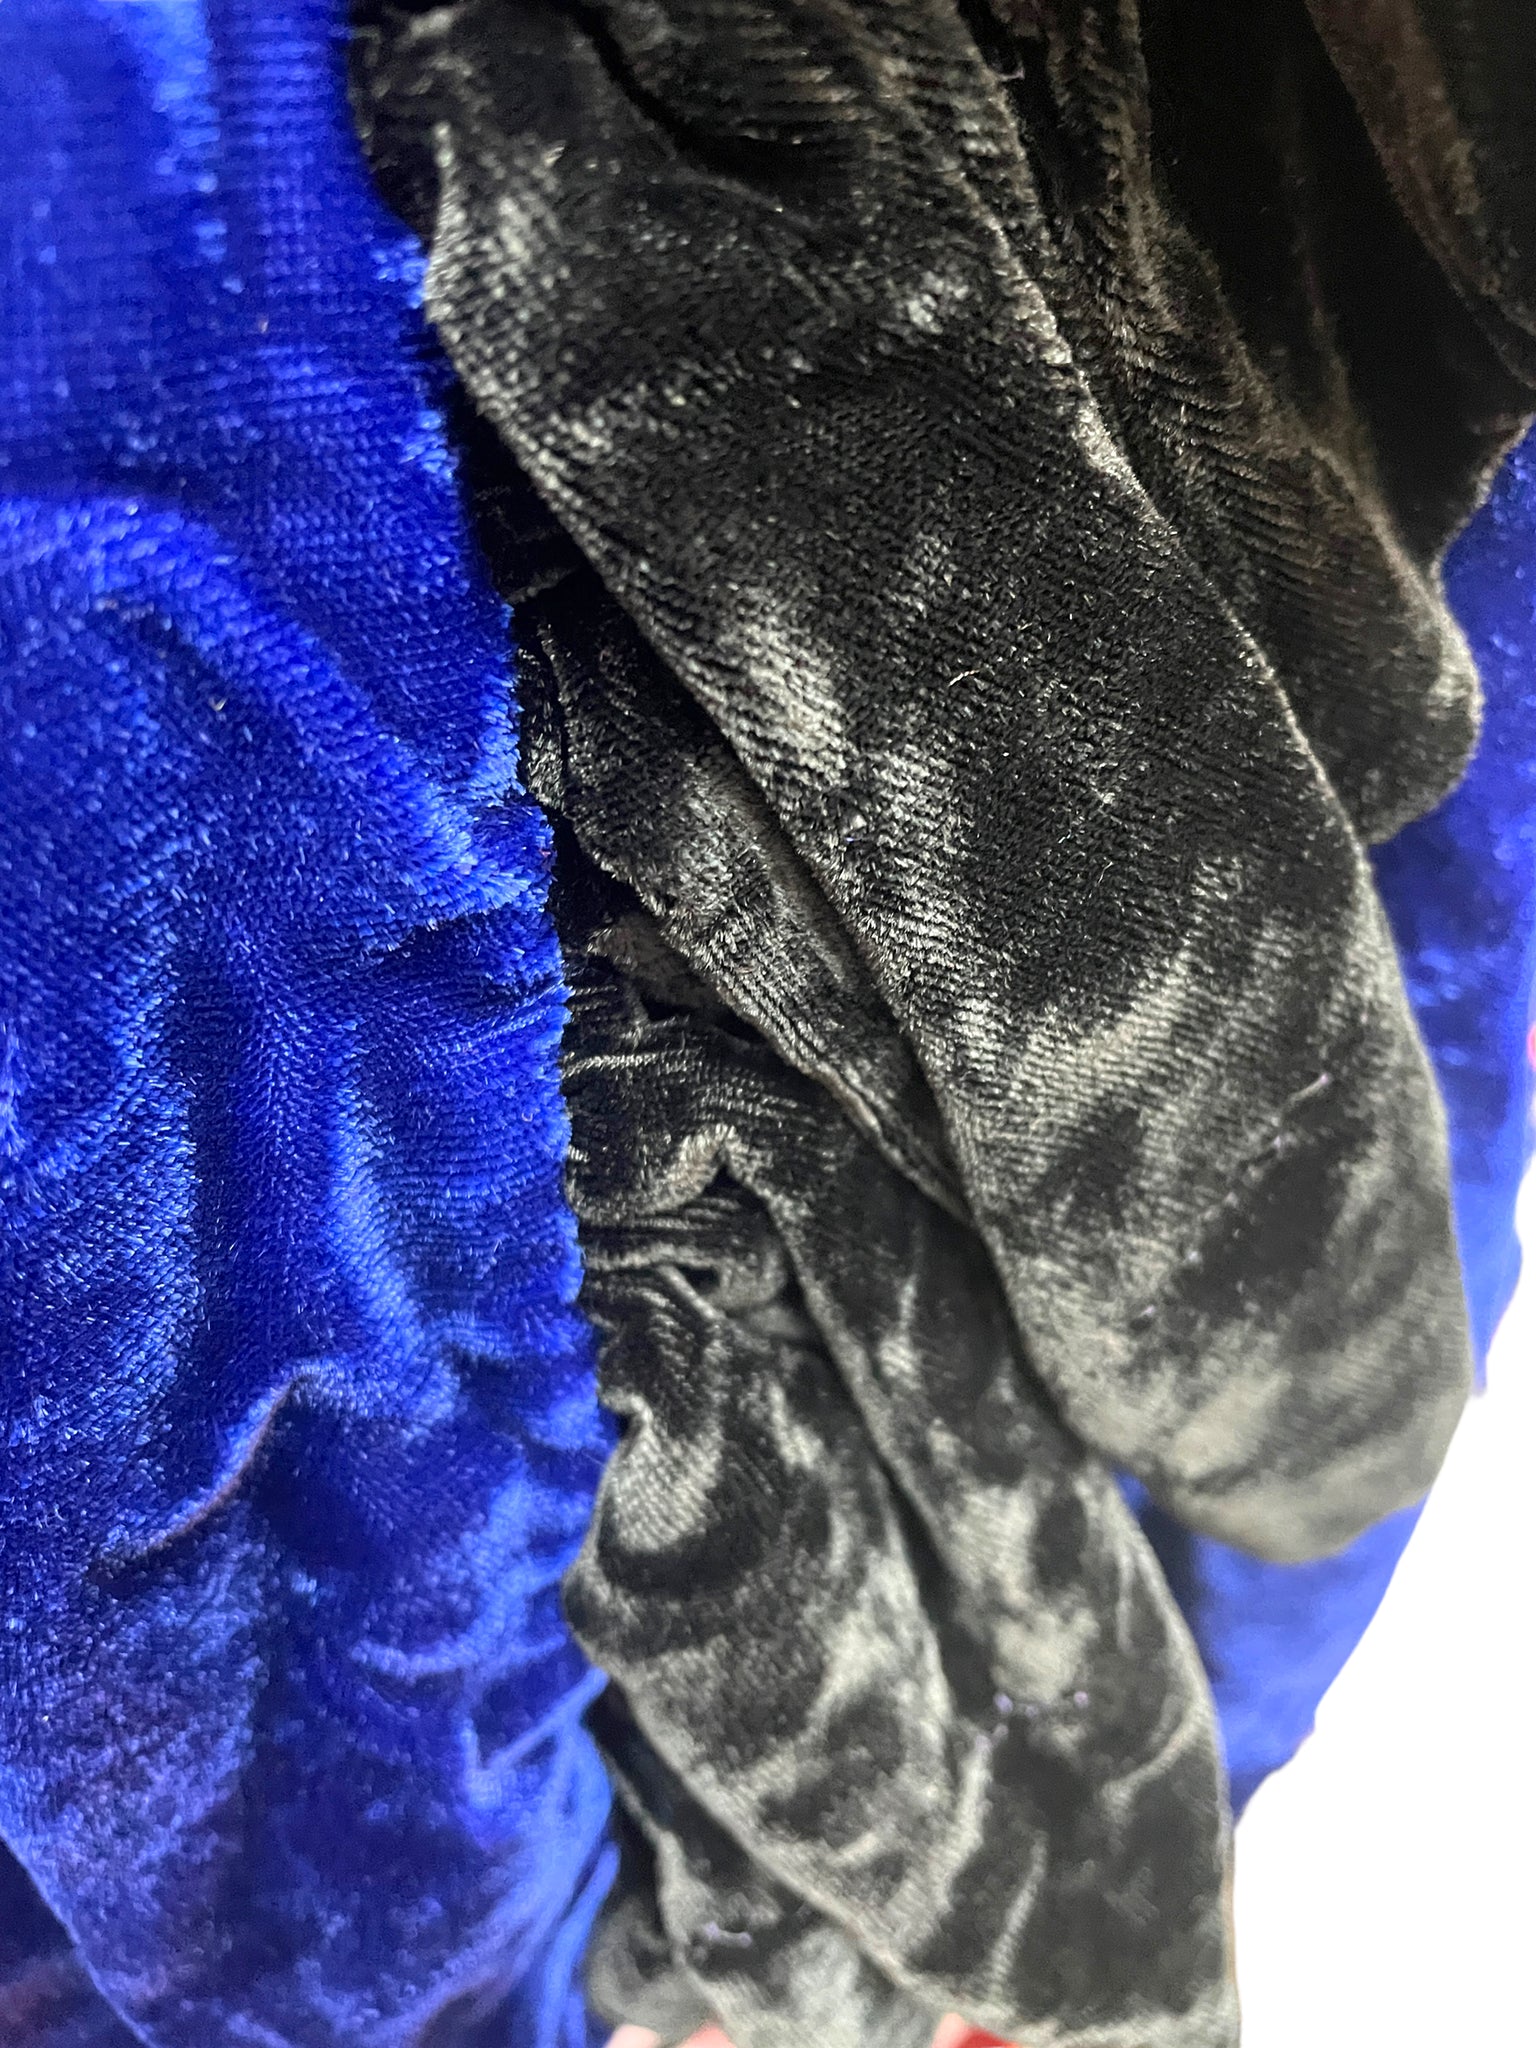 Unexpected Glamor Black Blue Strapless Bustier Velvet Cocktail Dress